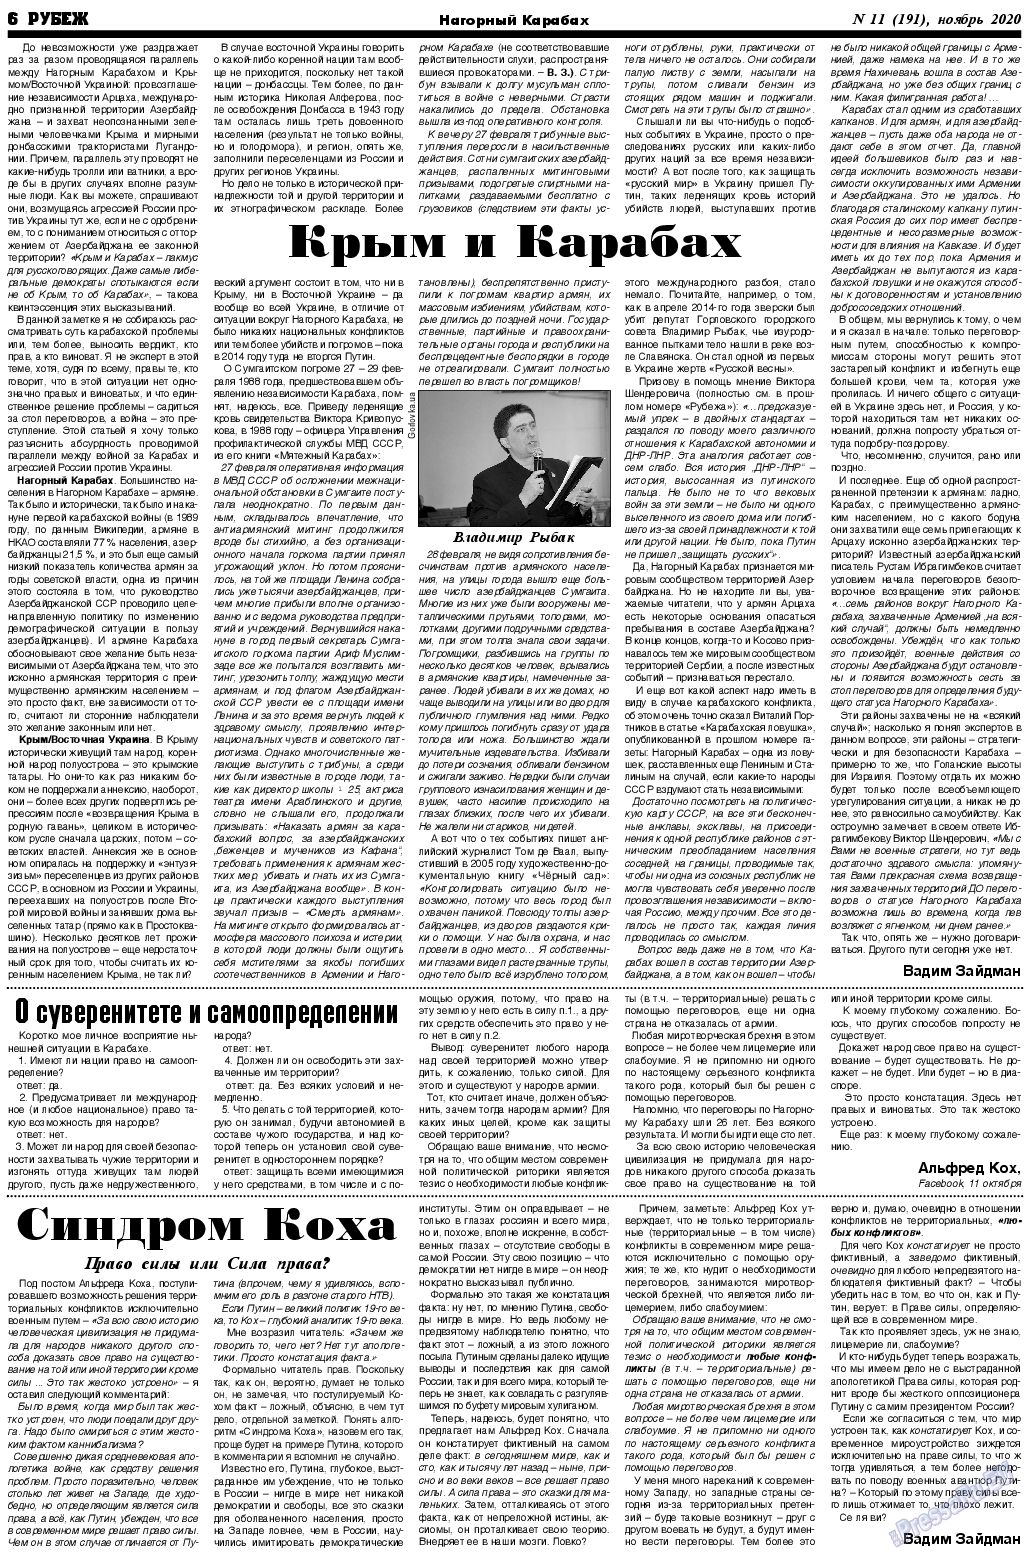 Рубеж (газета). 2020 год, номер 11, стр. 6